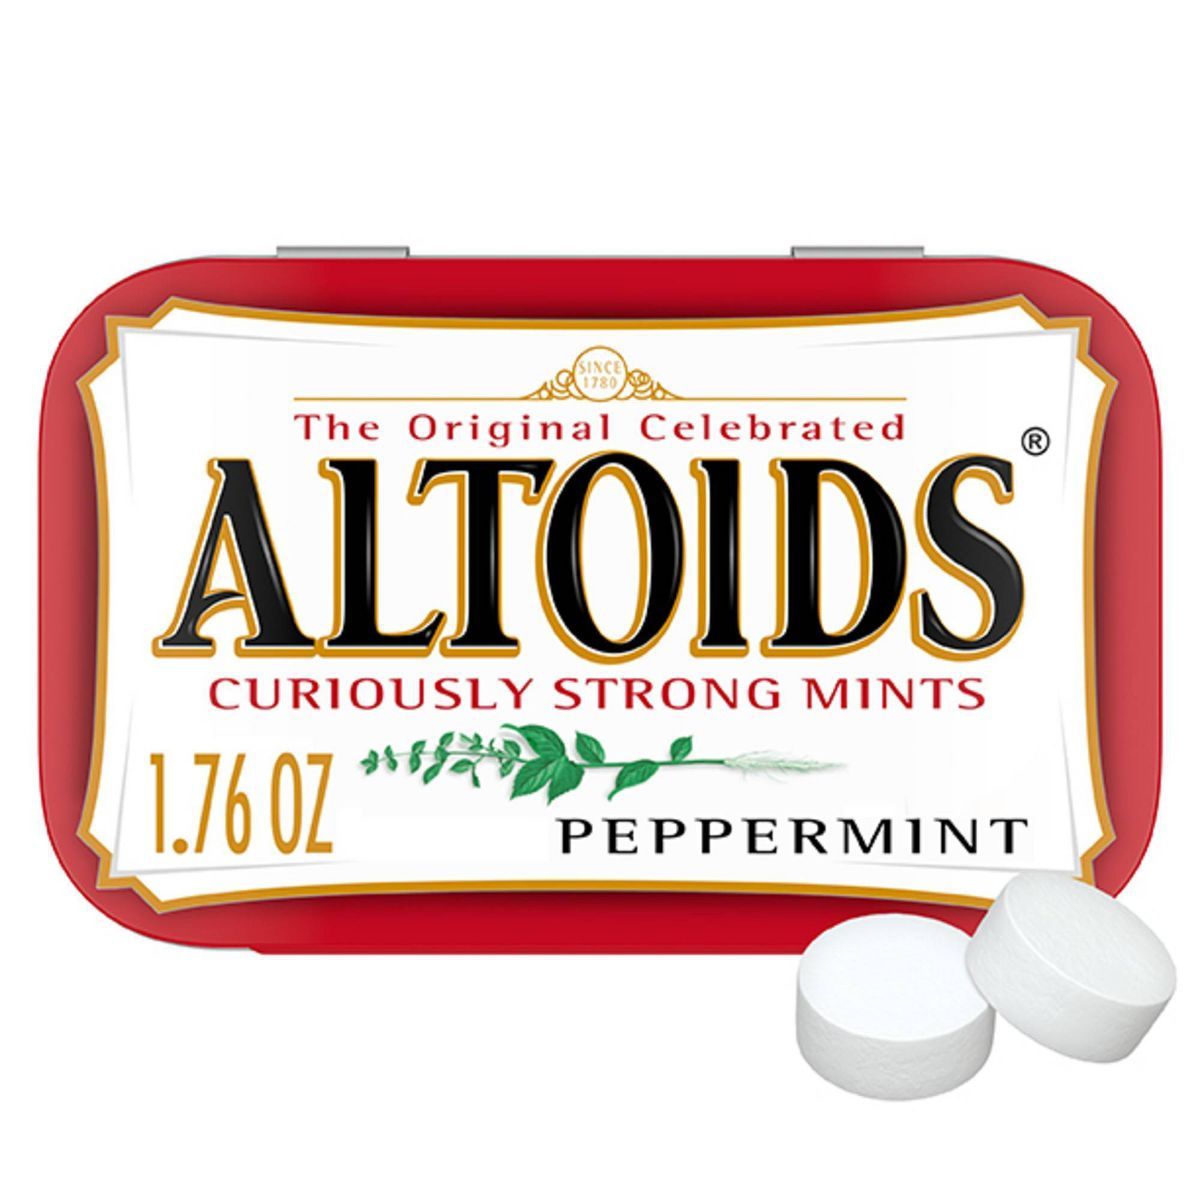 Altoids Peppermint Mint Candies - 1.7oz | Target